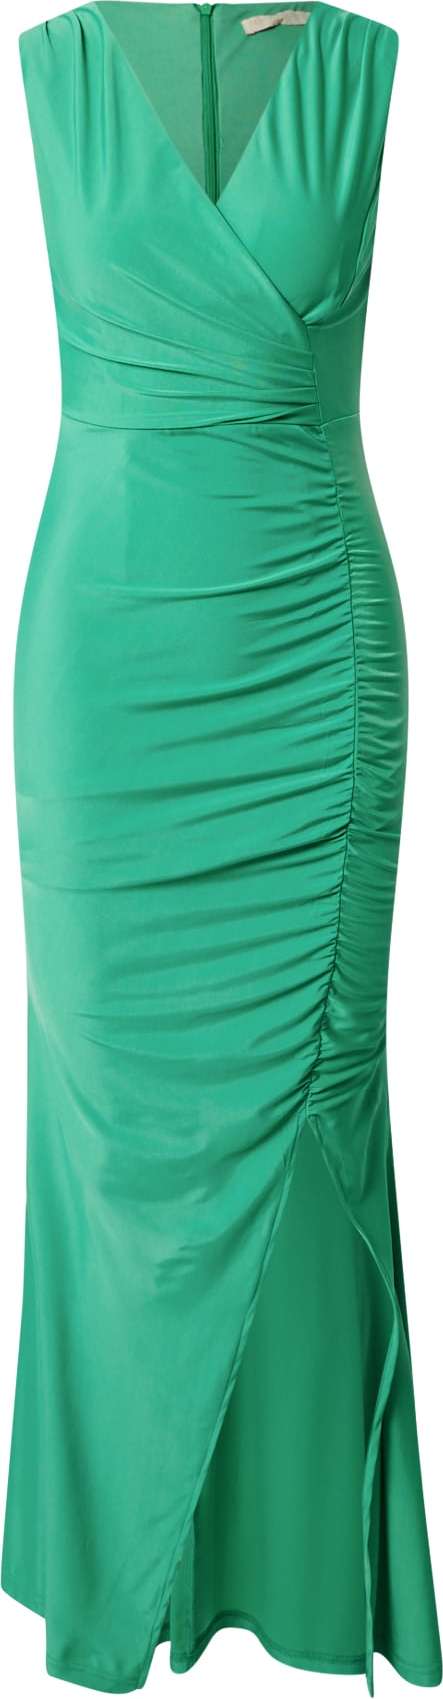 Skirt & Stiletto Společenské šaty 'HAVANA' zelená